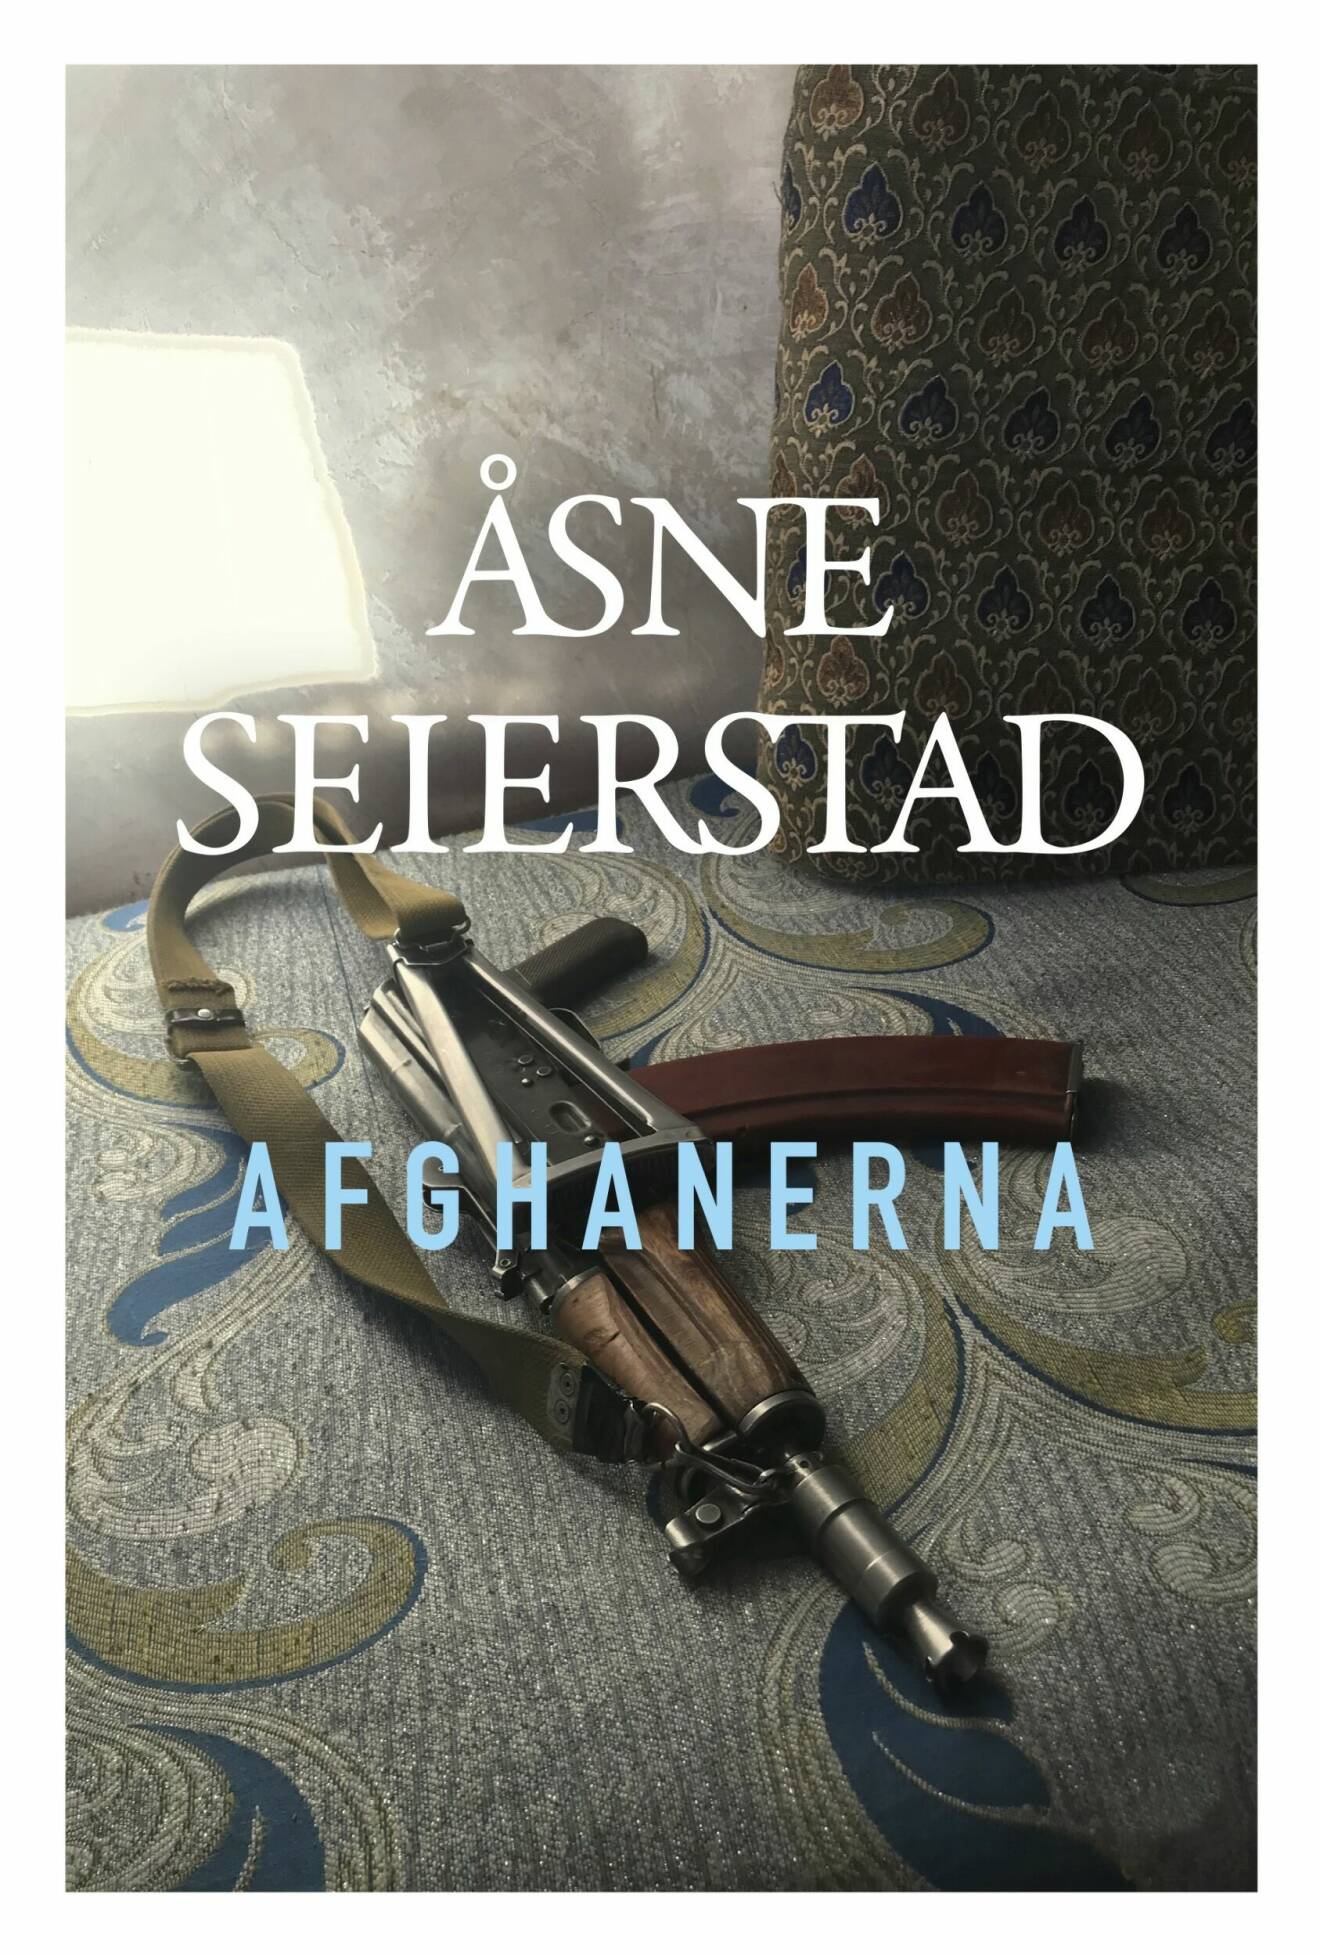 Afghanerna (Polaris) av Åsne Seierstad.